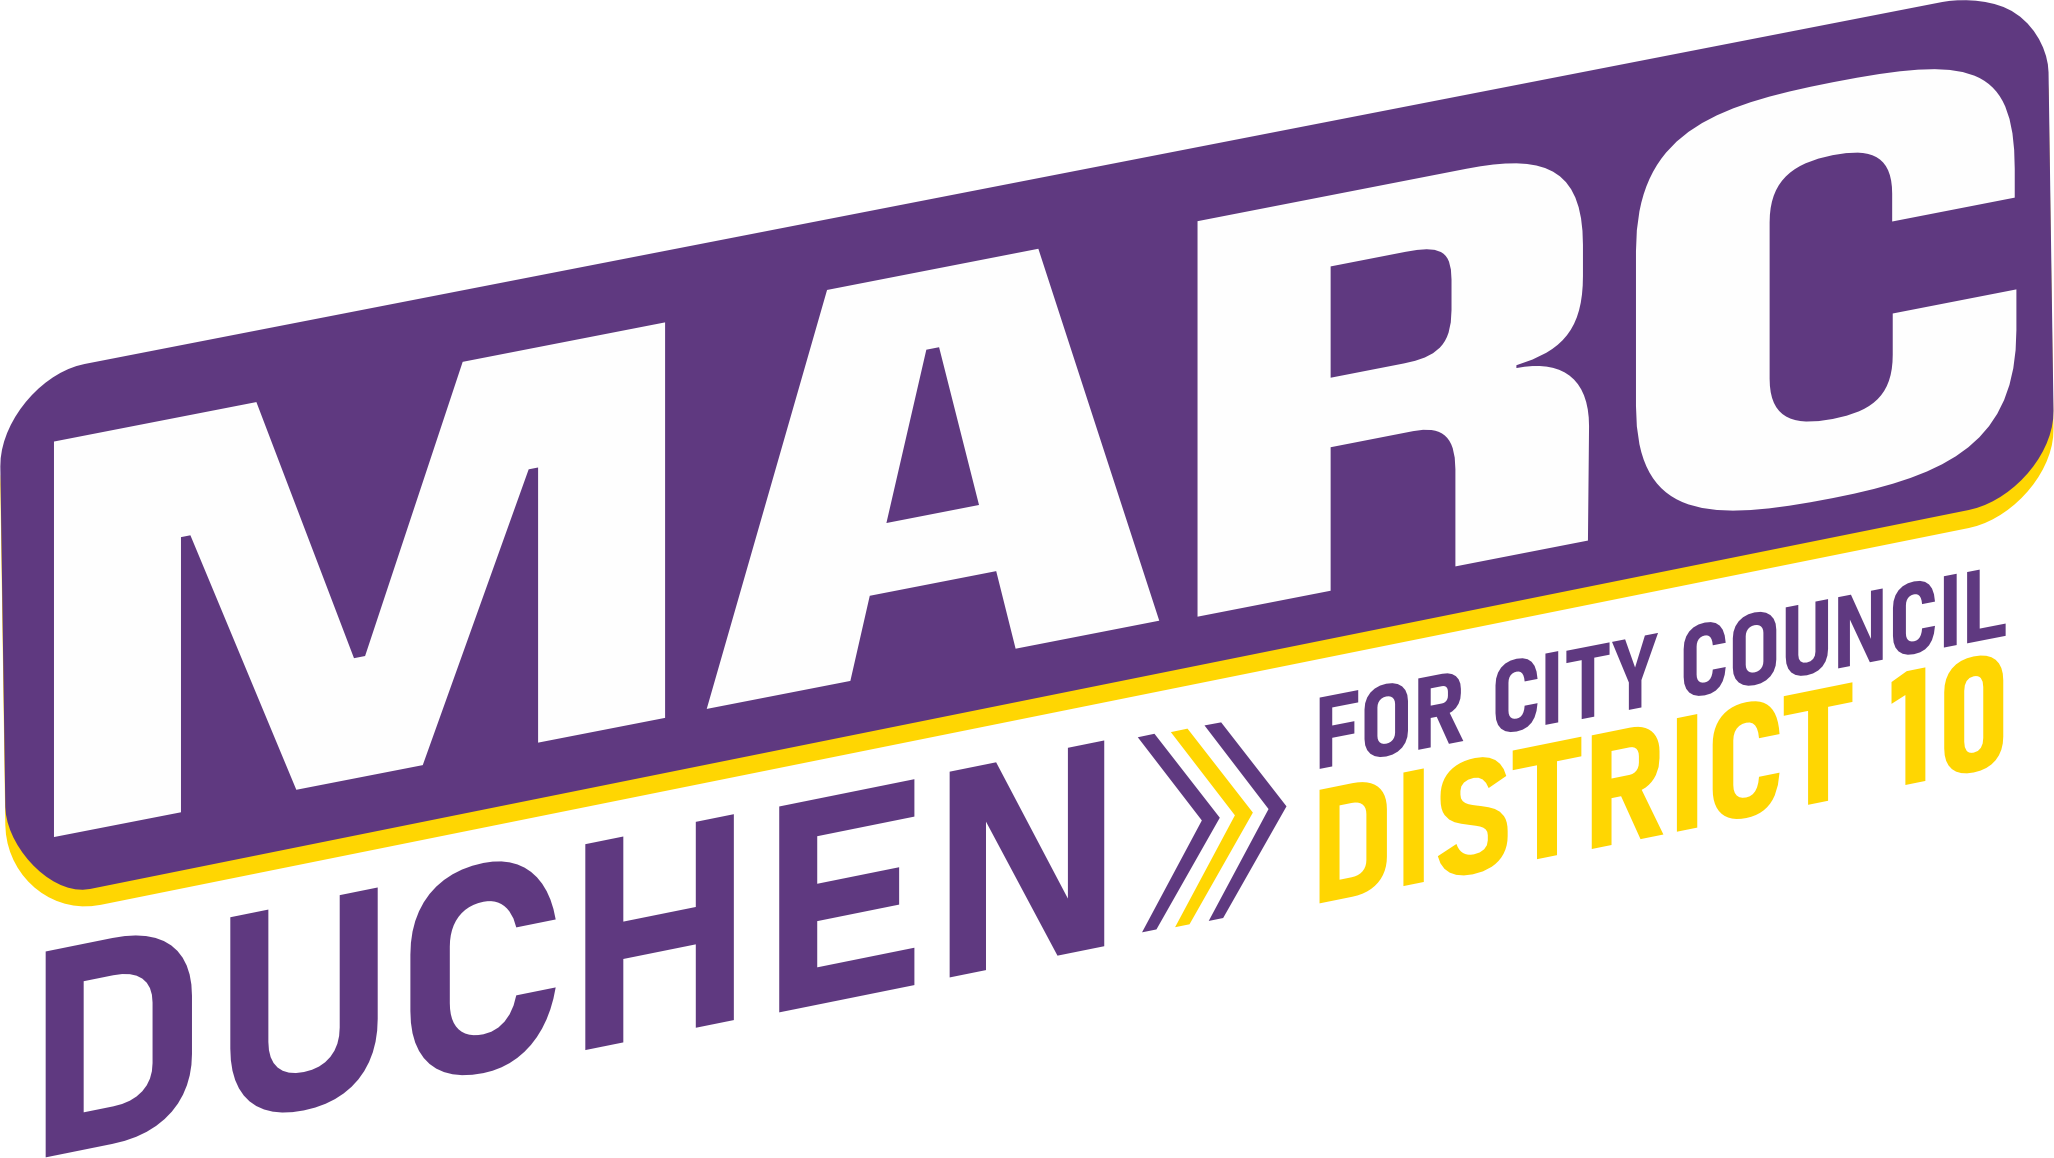 Marc Duchen Logo